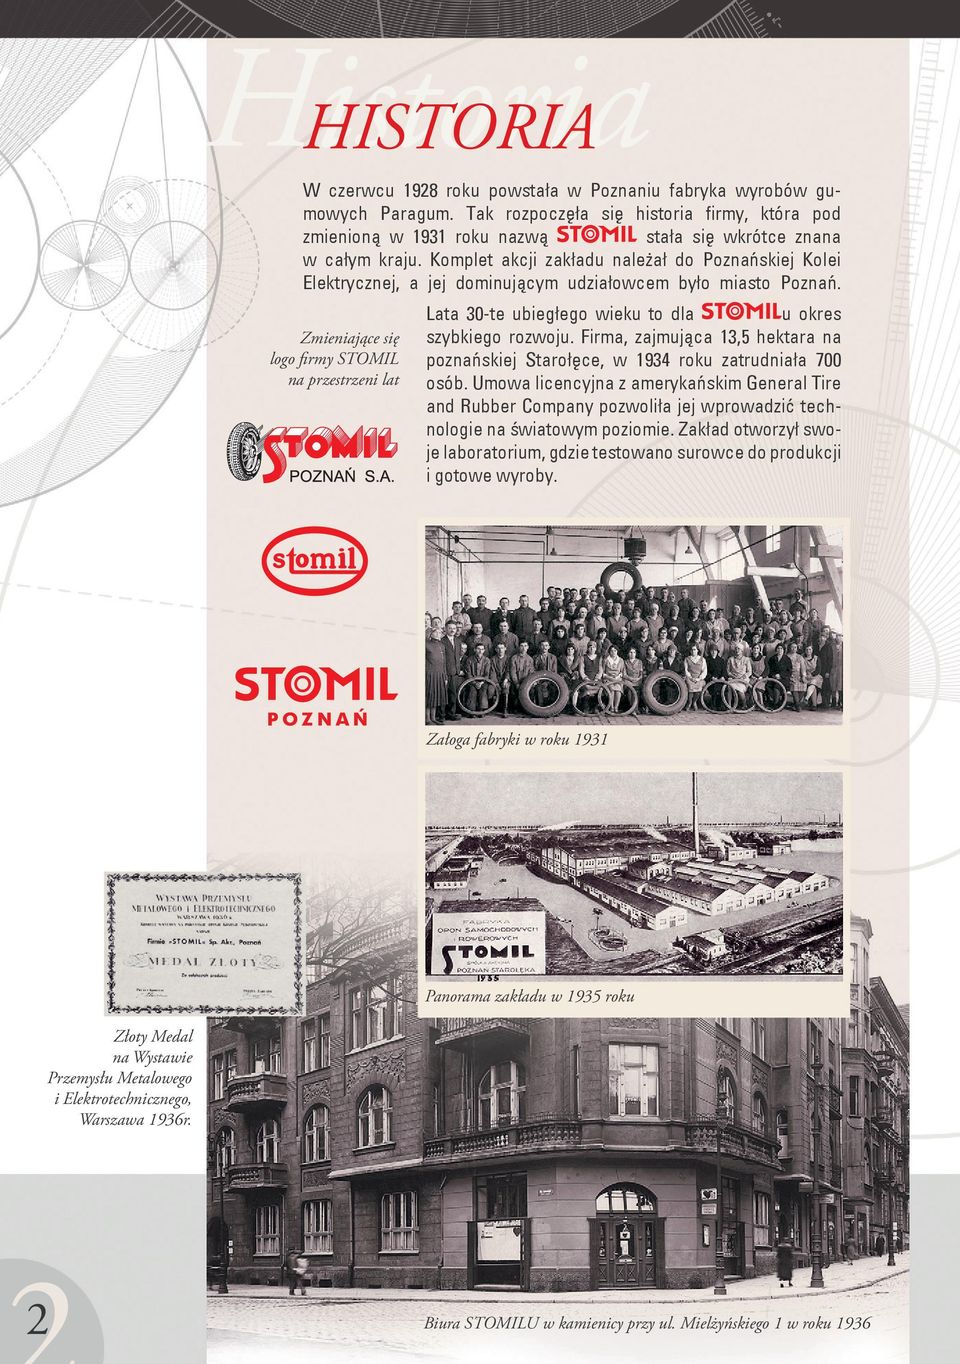 Komplet akcji zakładu należał do Poznańskiej Kolei Elektrycznej, a jej dominującym udziałowcem było miasto Poznań.